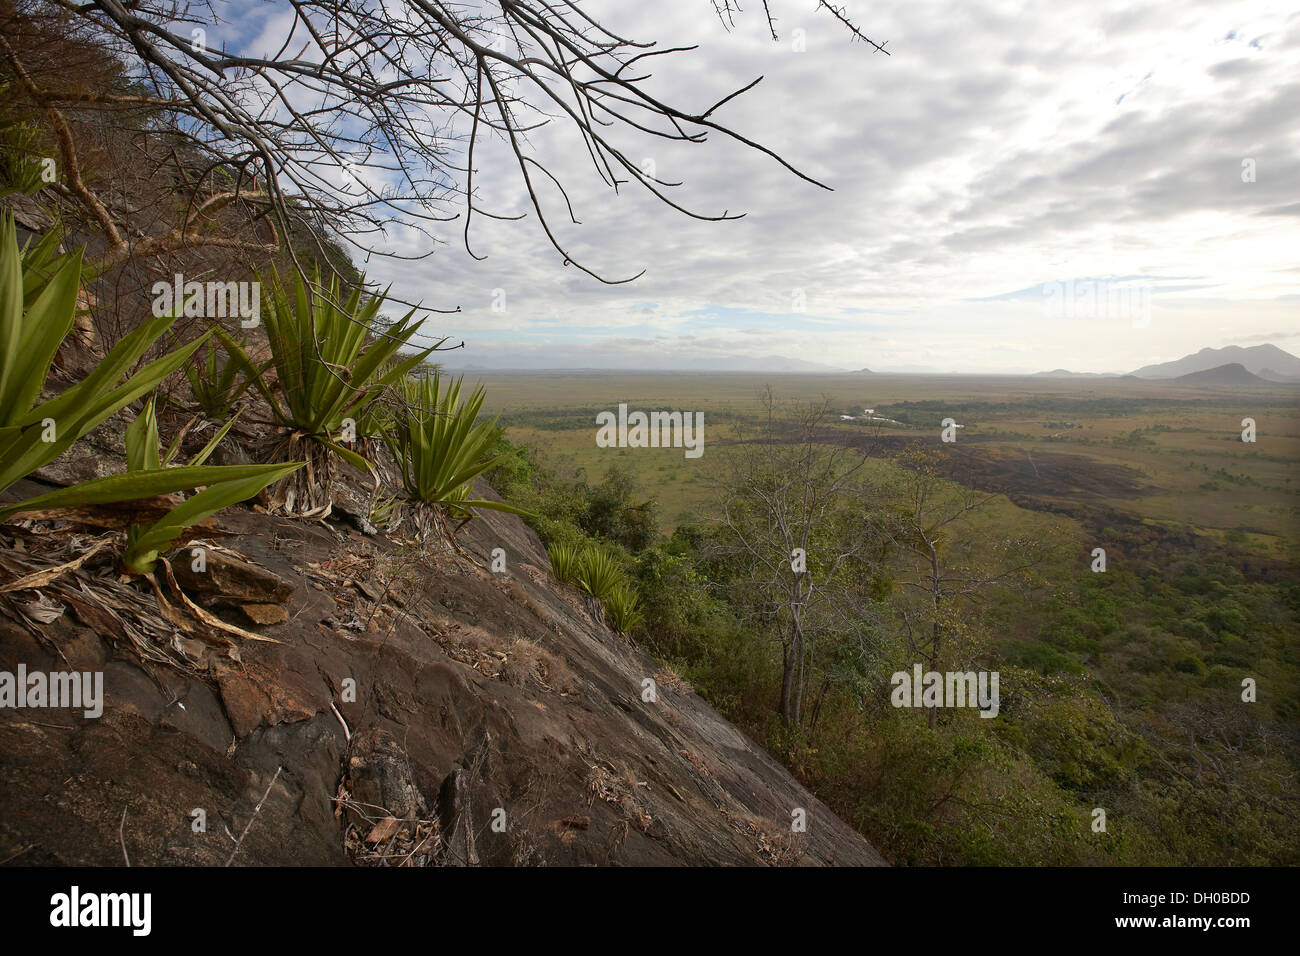 Piton rocheux à la recherche sur le paysage de savane, au Guyana, en Amérique du Sud. Banque D'Images